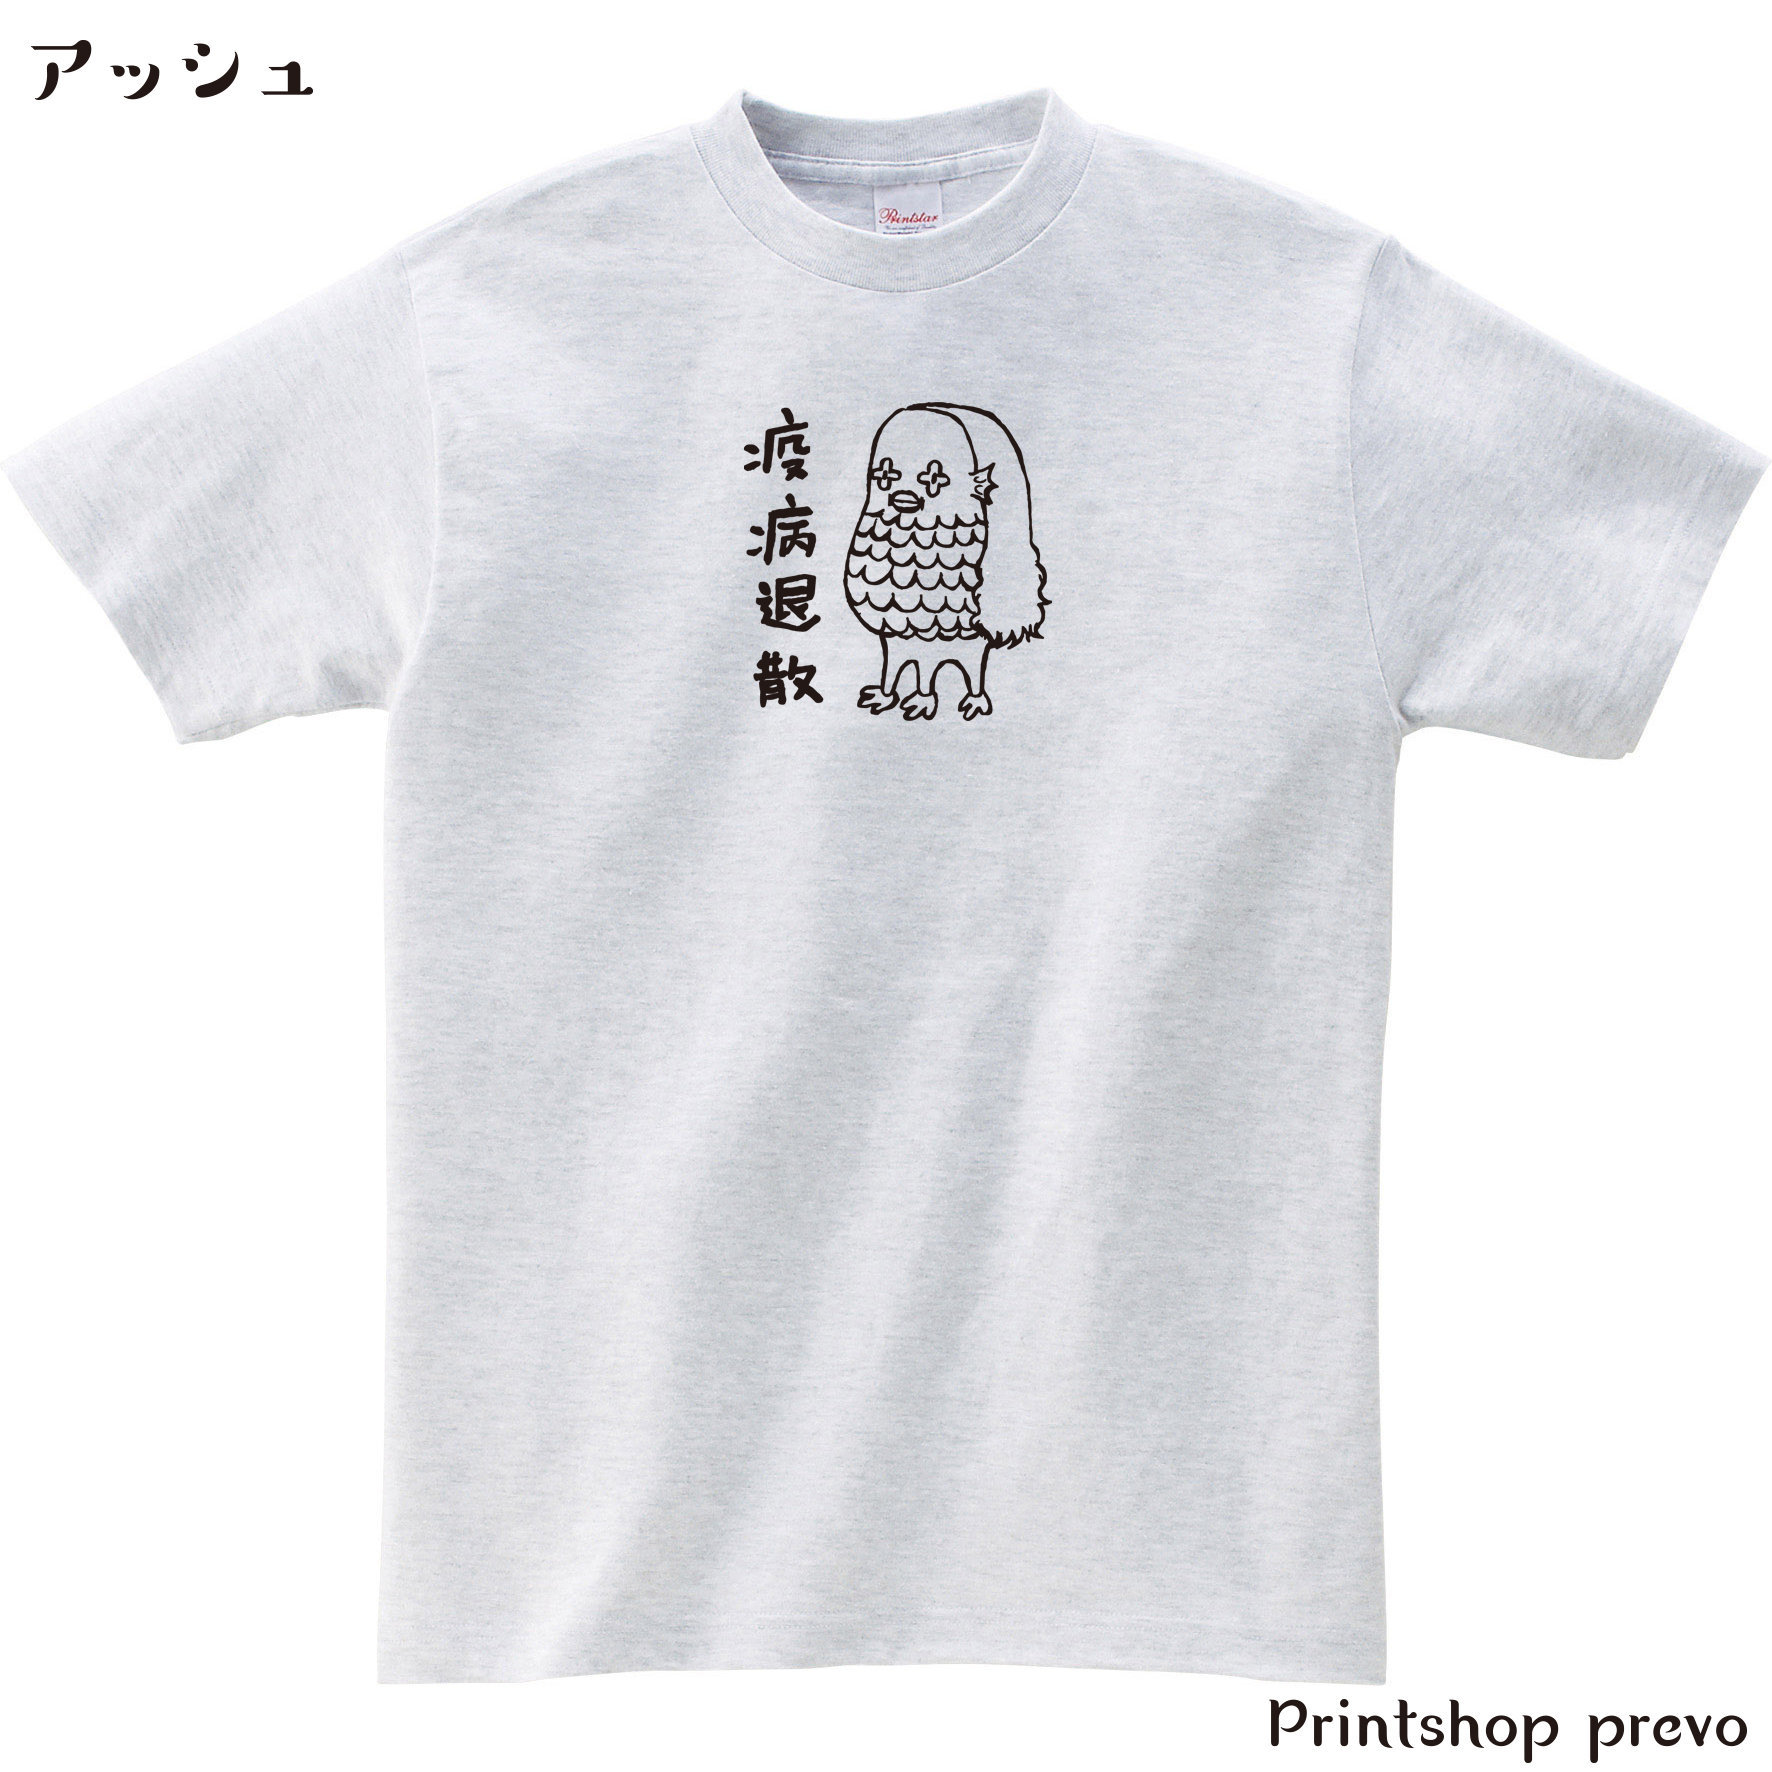 人気の折り紙のアマビエ様が単色プリントTシャツで登場です。